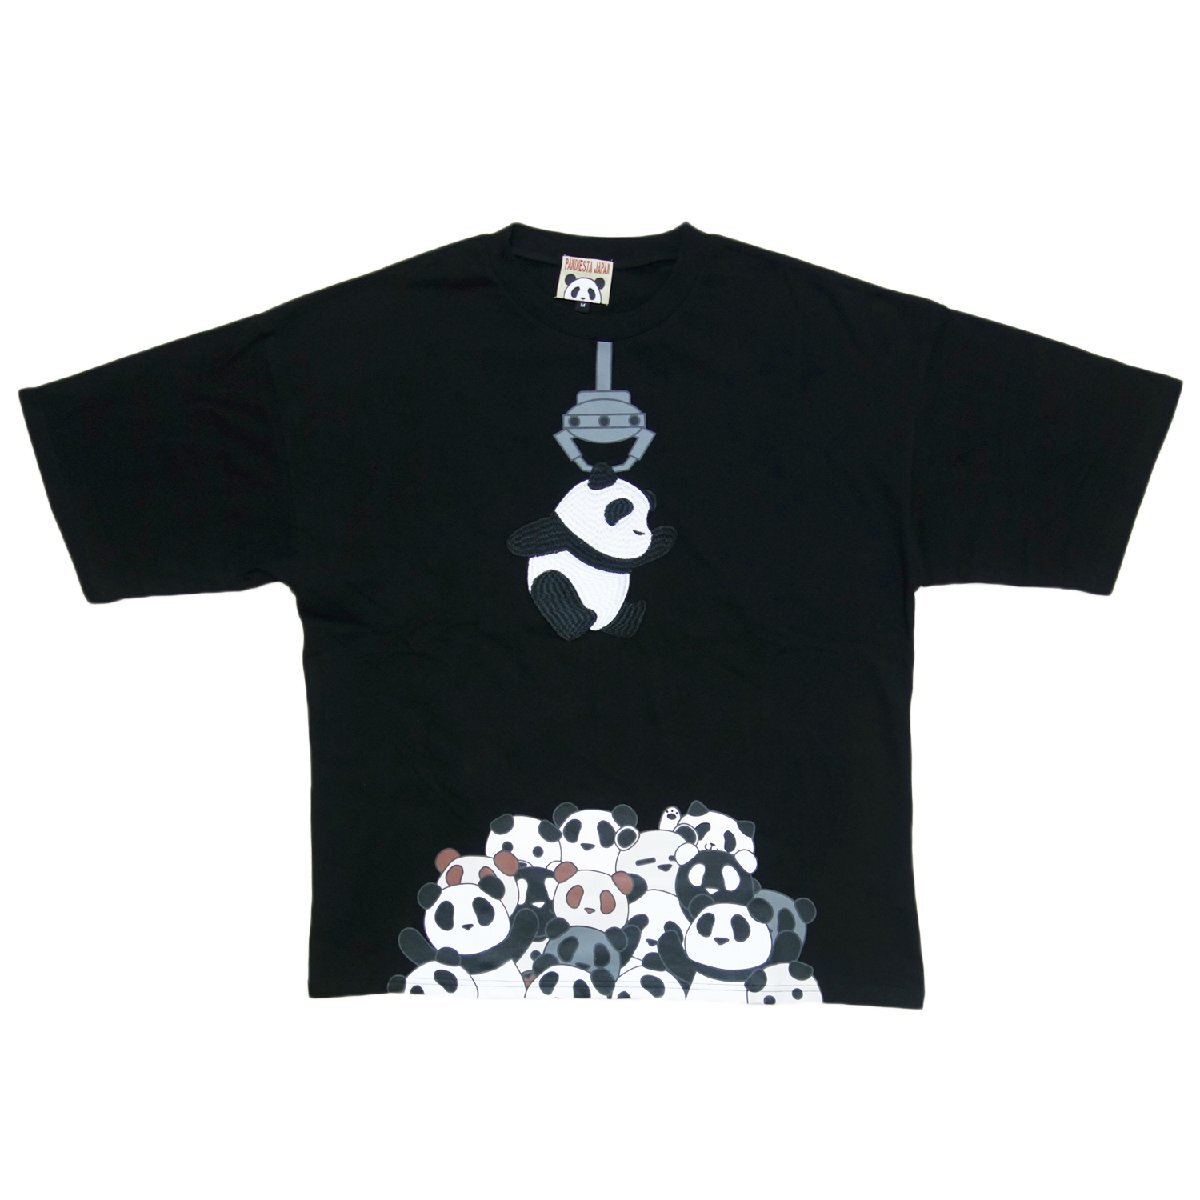 送料無料 パンディエスタ L サイズ 554105 半袖 Tシャツ 黒 オーバーサイズ ビッグシルエット PANDIESTA JAPAN 半T パンダ 熊猫 メンズ JF_PANDIESTA パンディエスタ